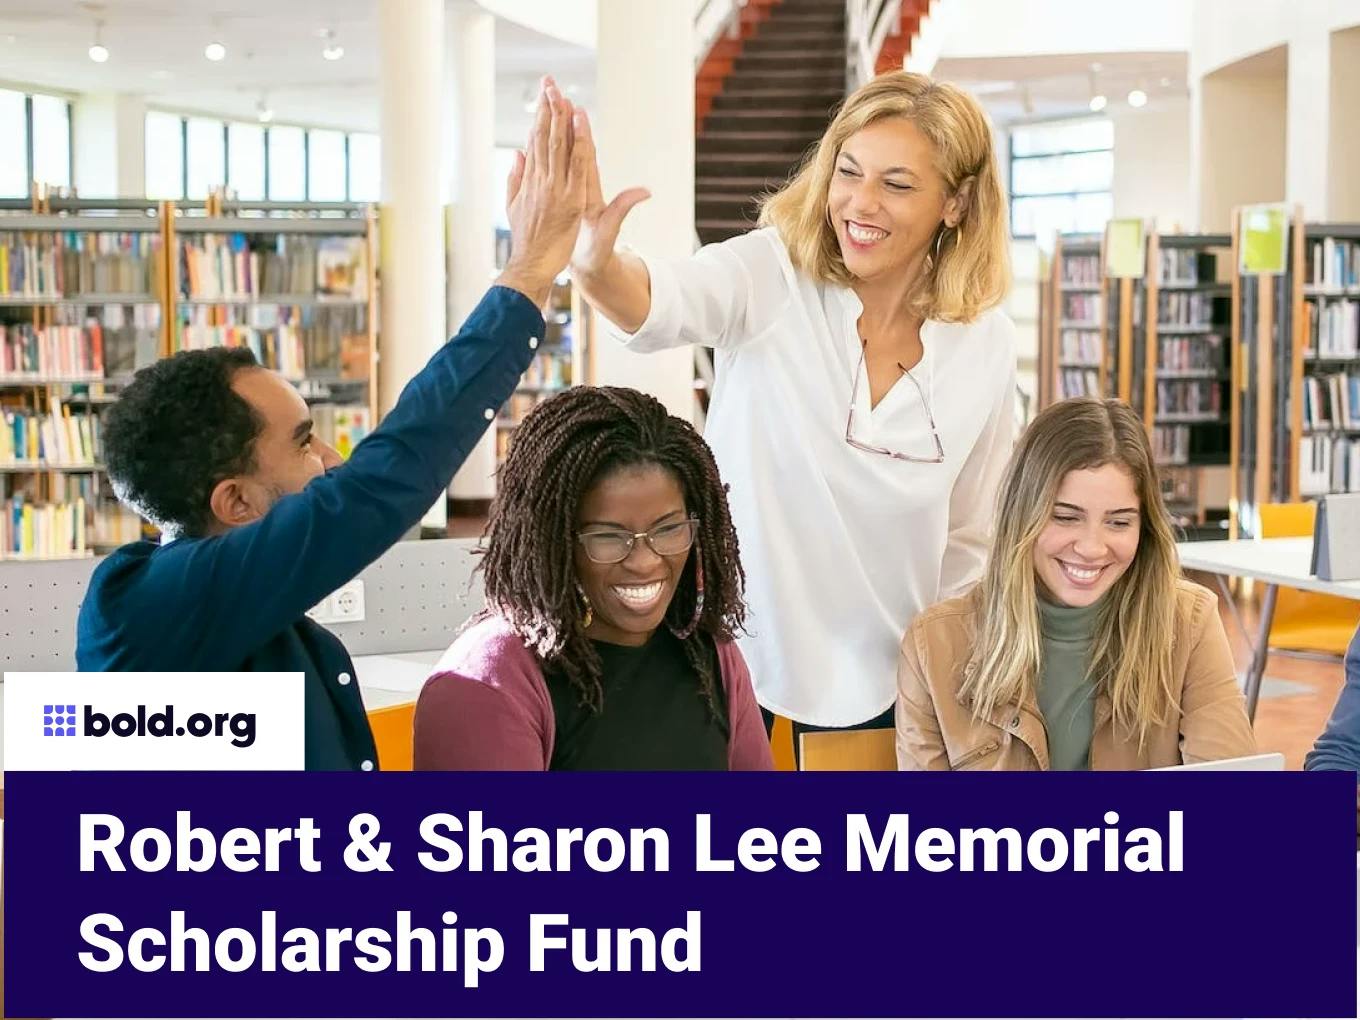 Robert & Sharon Lee Memorial Scholarship Fund